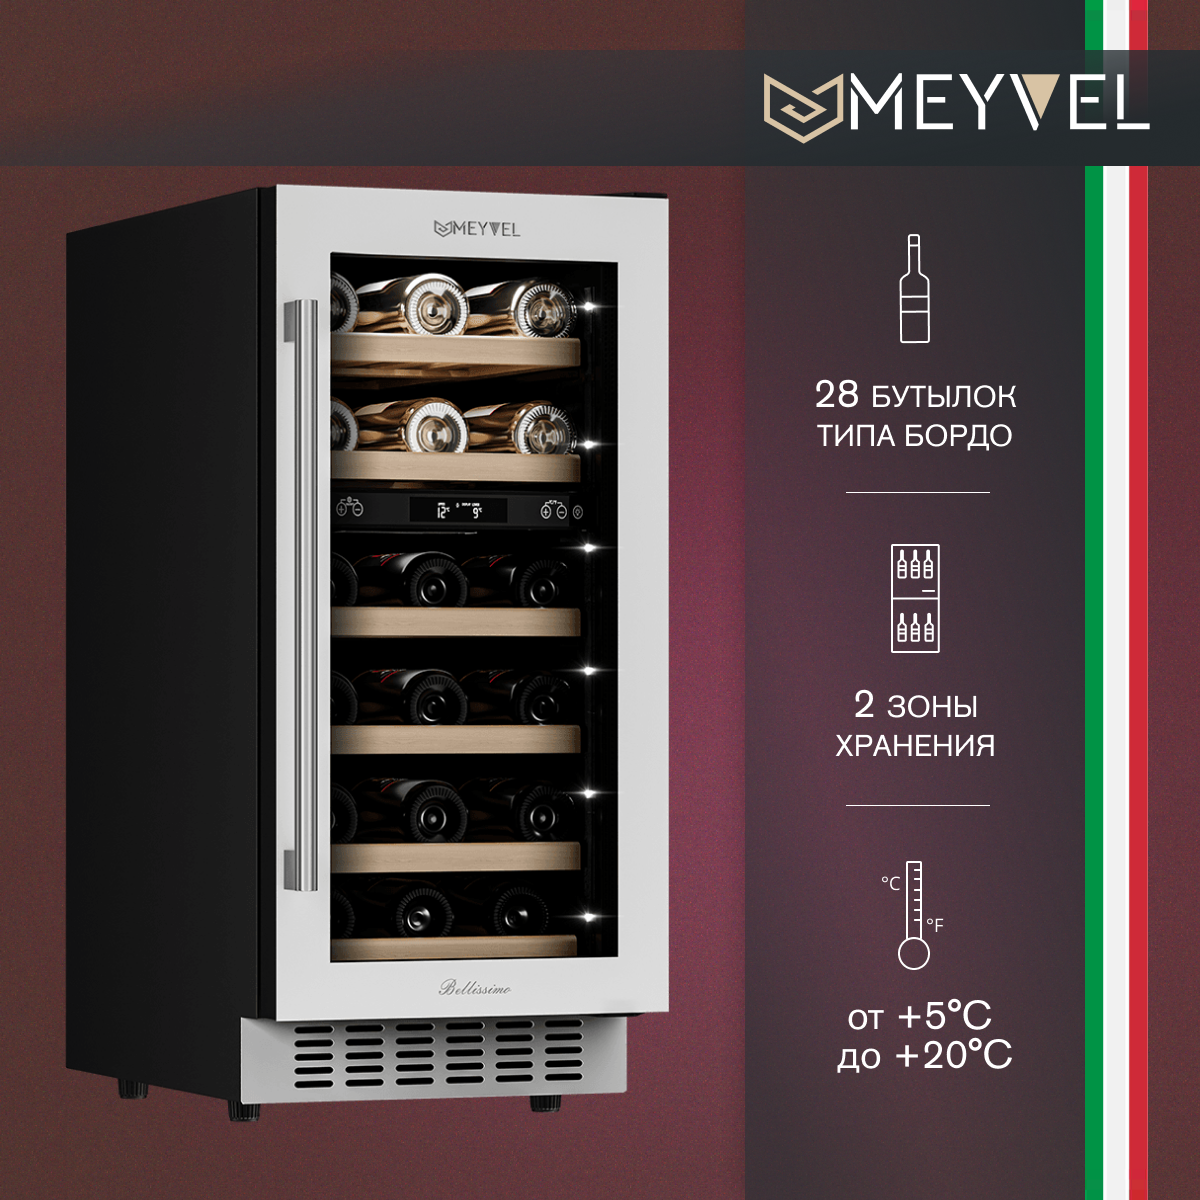 Винный холодильный шкаф Meyvel MV28-KWT2 компрессорный (встраиваемый / отдельностоящий холодильник для вина на 28 бутылок)